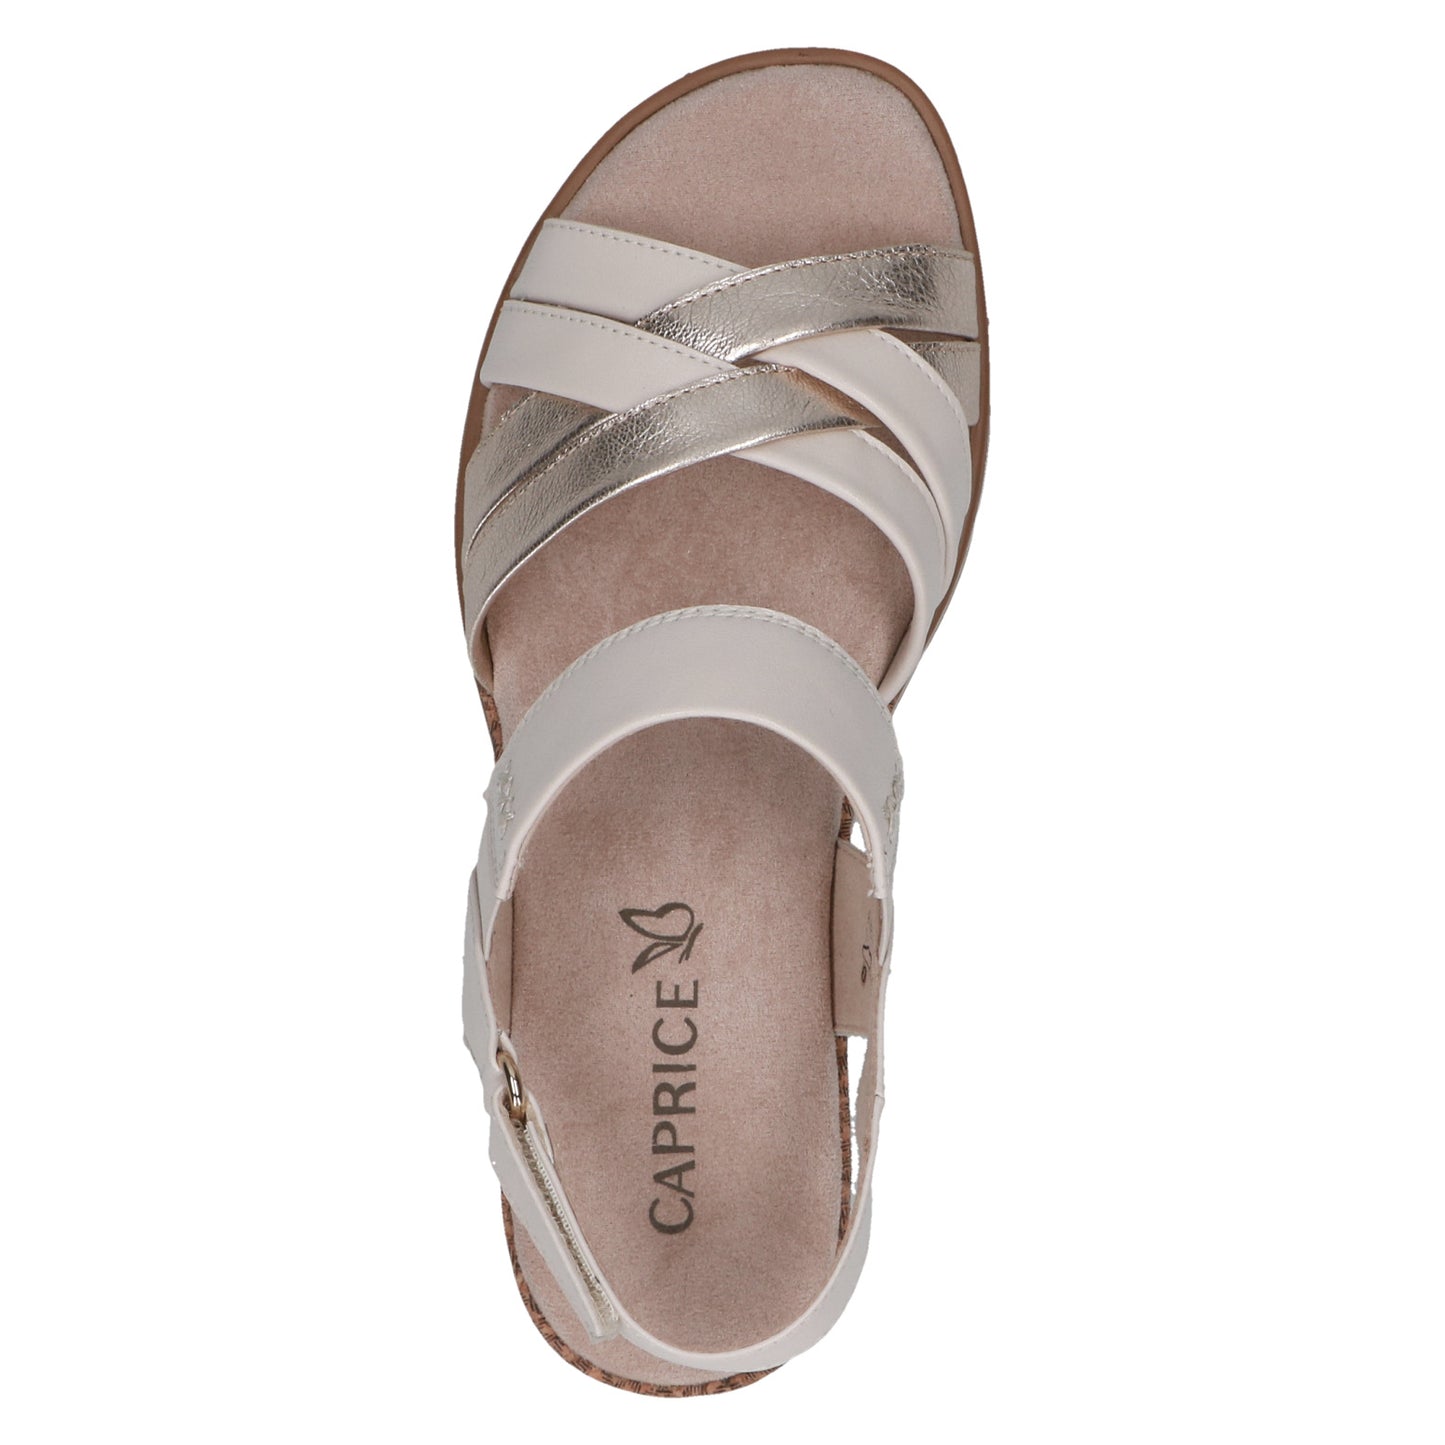 Caprice - Ladies Shoes Sandals Cream, Gold (2204)